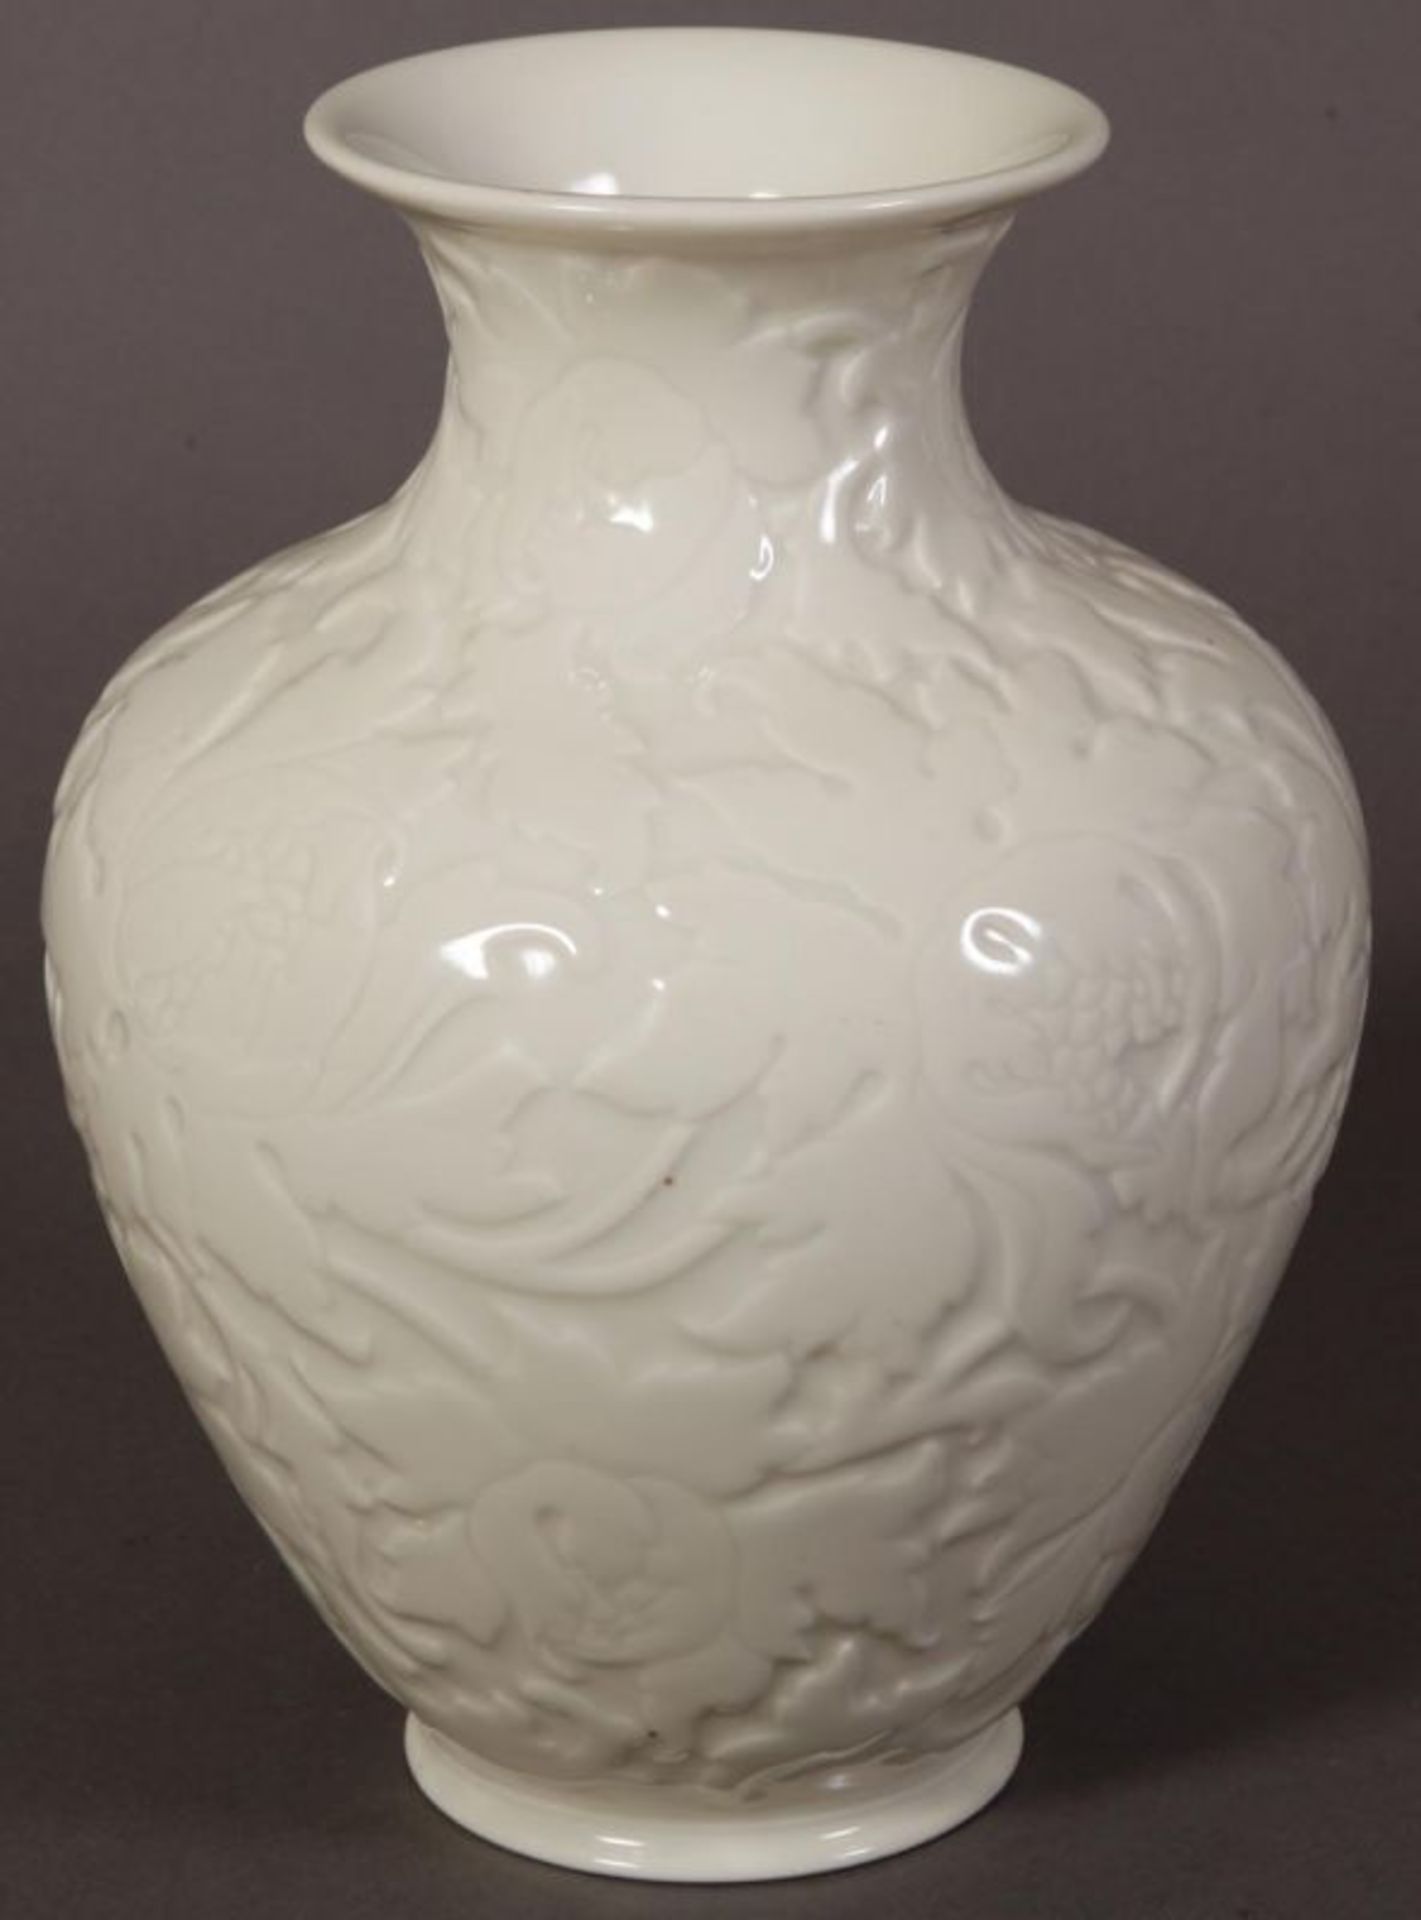 Bauchige "Rosenthal"-Vase, flächiger Floraldekor. Höhe 29 cm, Durchmesser 20 cm. - Image 5 of 6